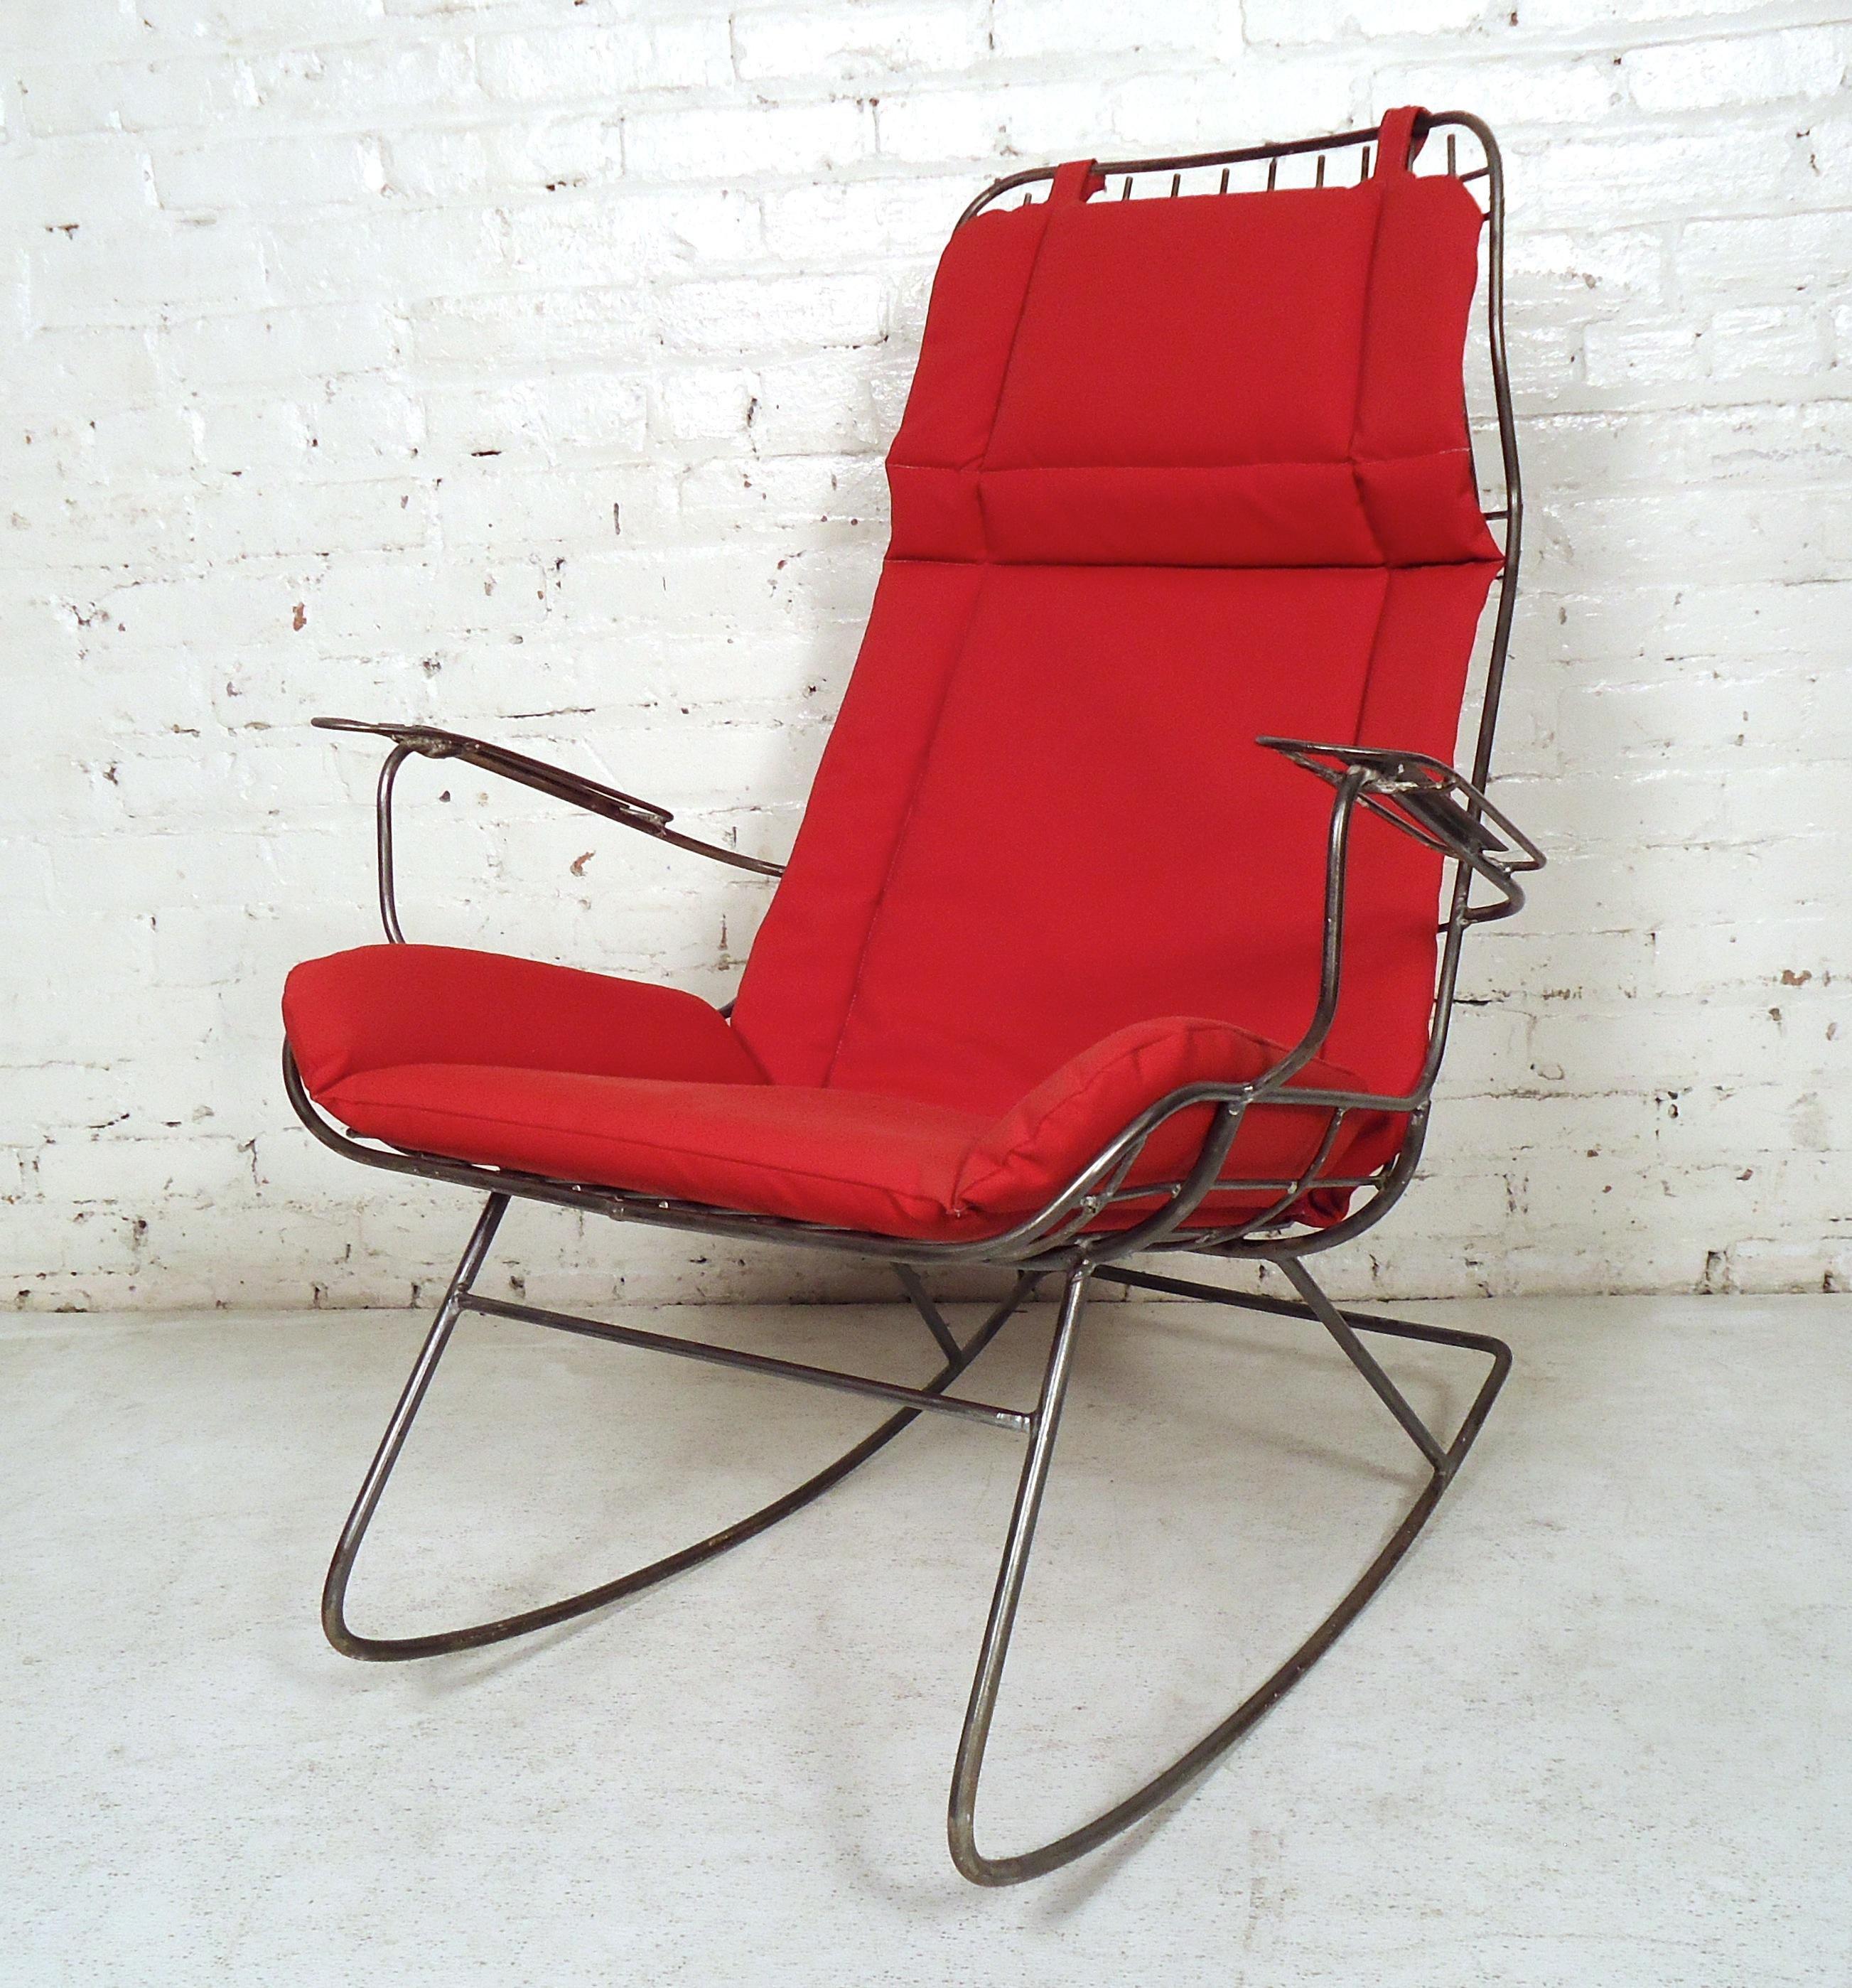 Ce fauteuil à bascule inhabituel en fer, de style moderne et vintage, est doté de coussins rembourrés rouges.

Veuillez confirmer la localisation de l'article (NY ou NJ) auprès du revendeur.